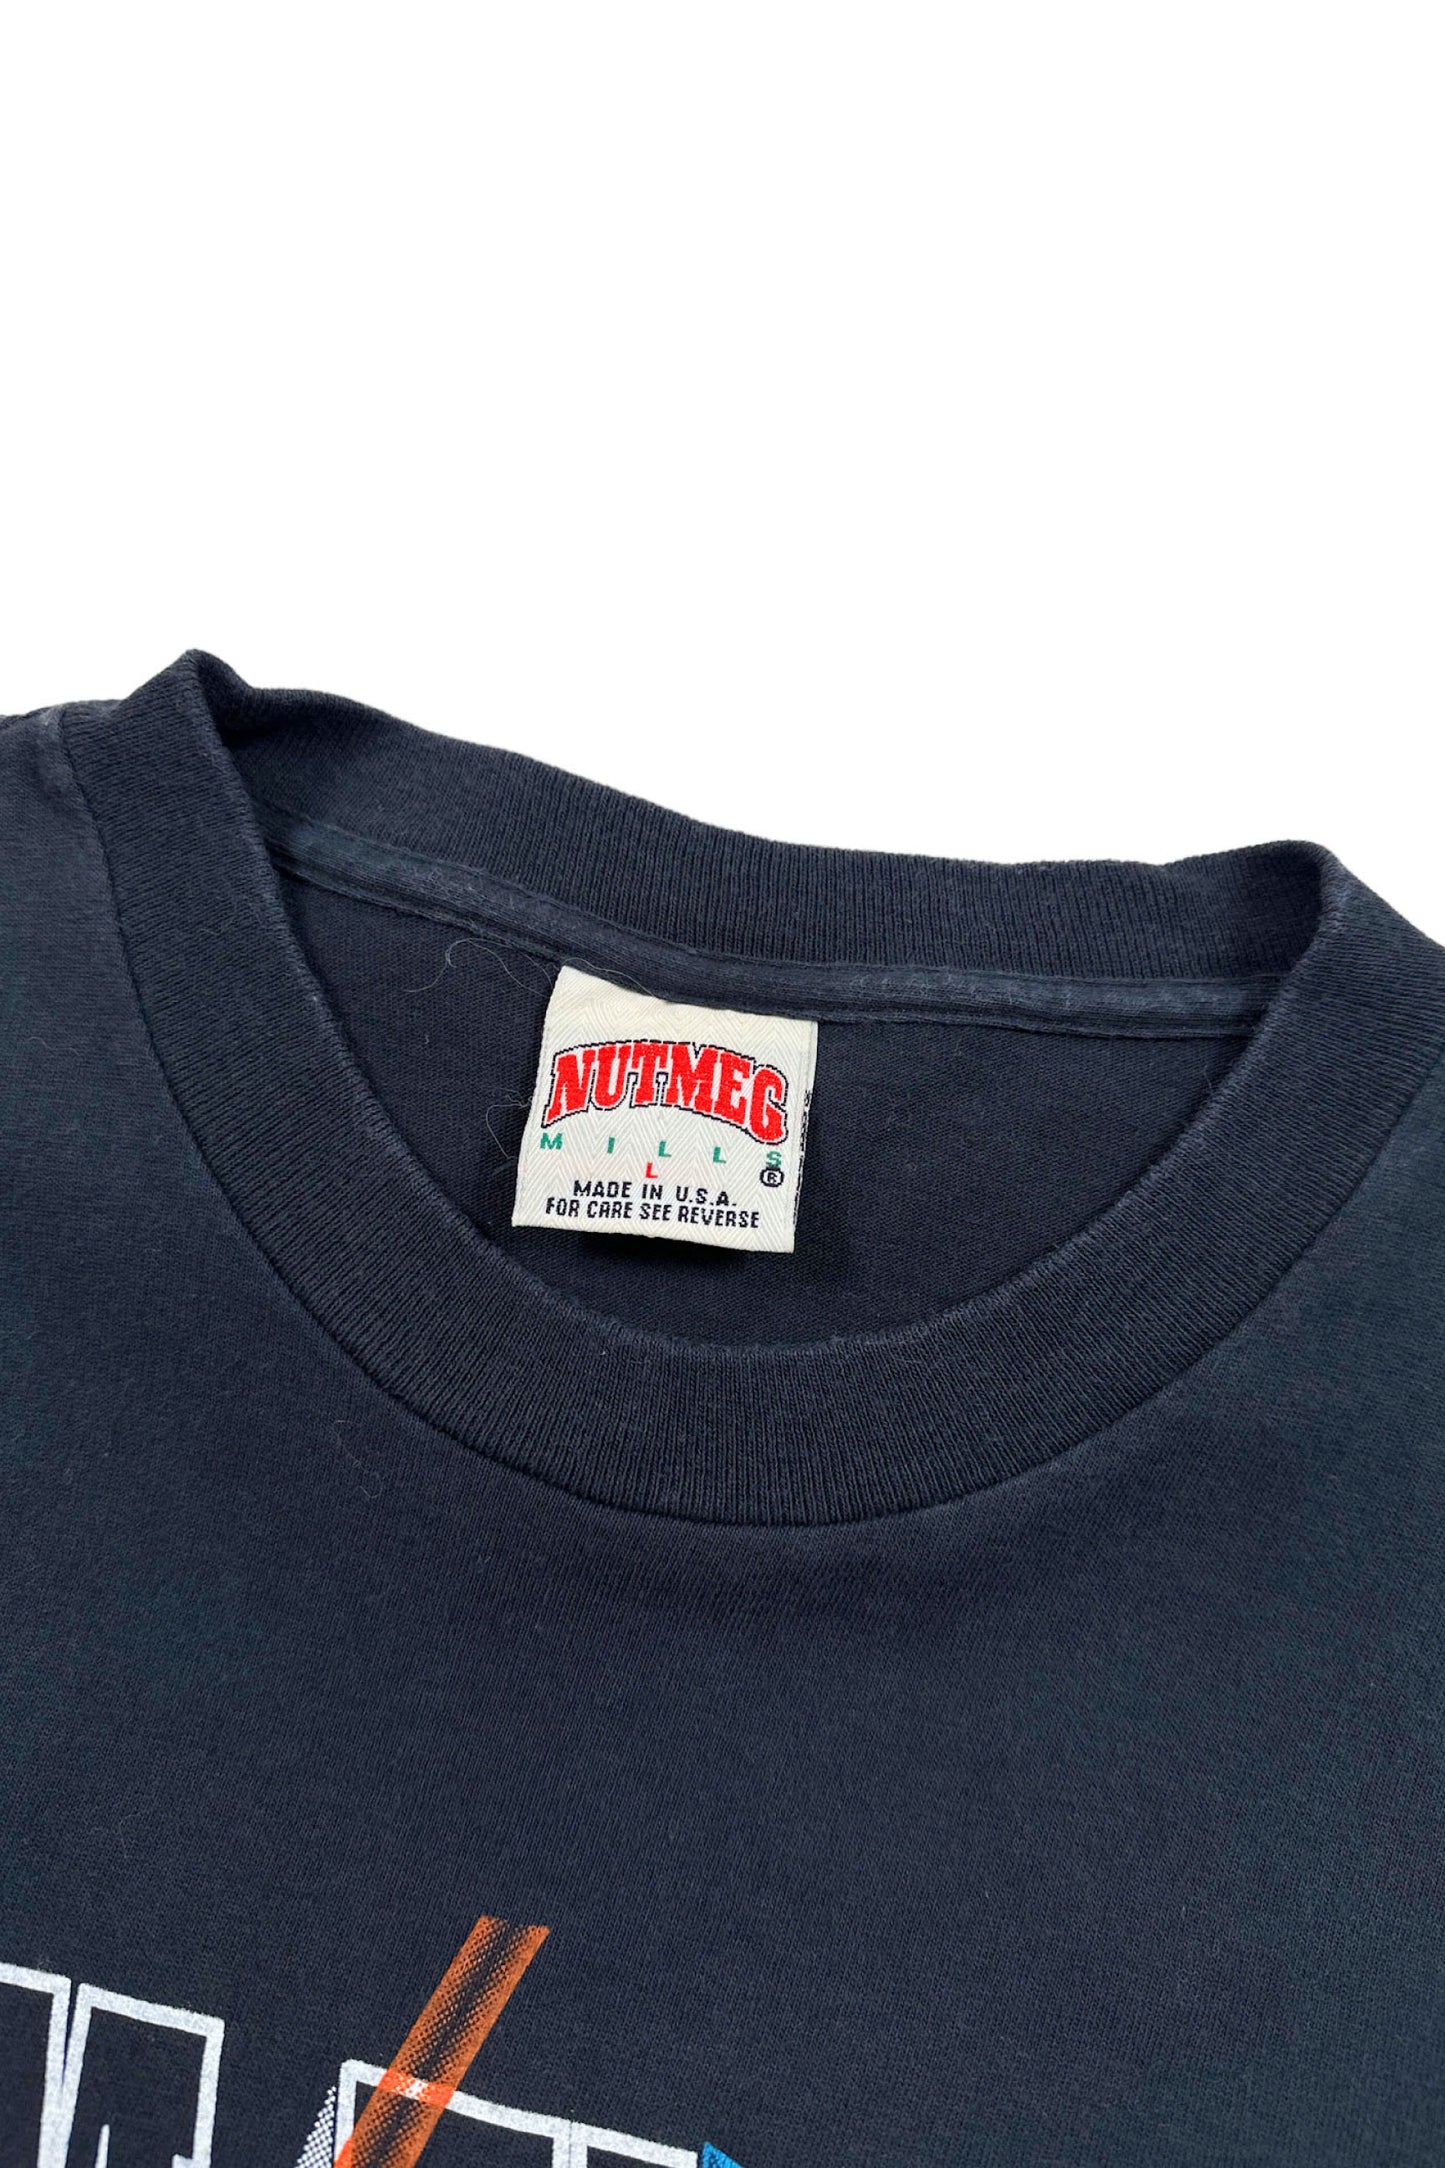 90‘s Made in USA NBA PHOENIX SUNS T-shirt